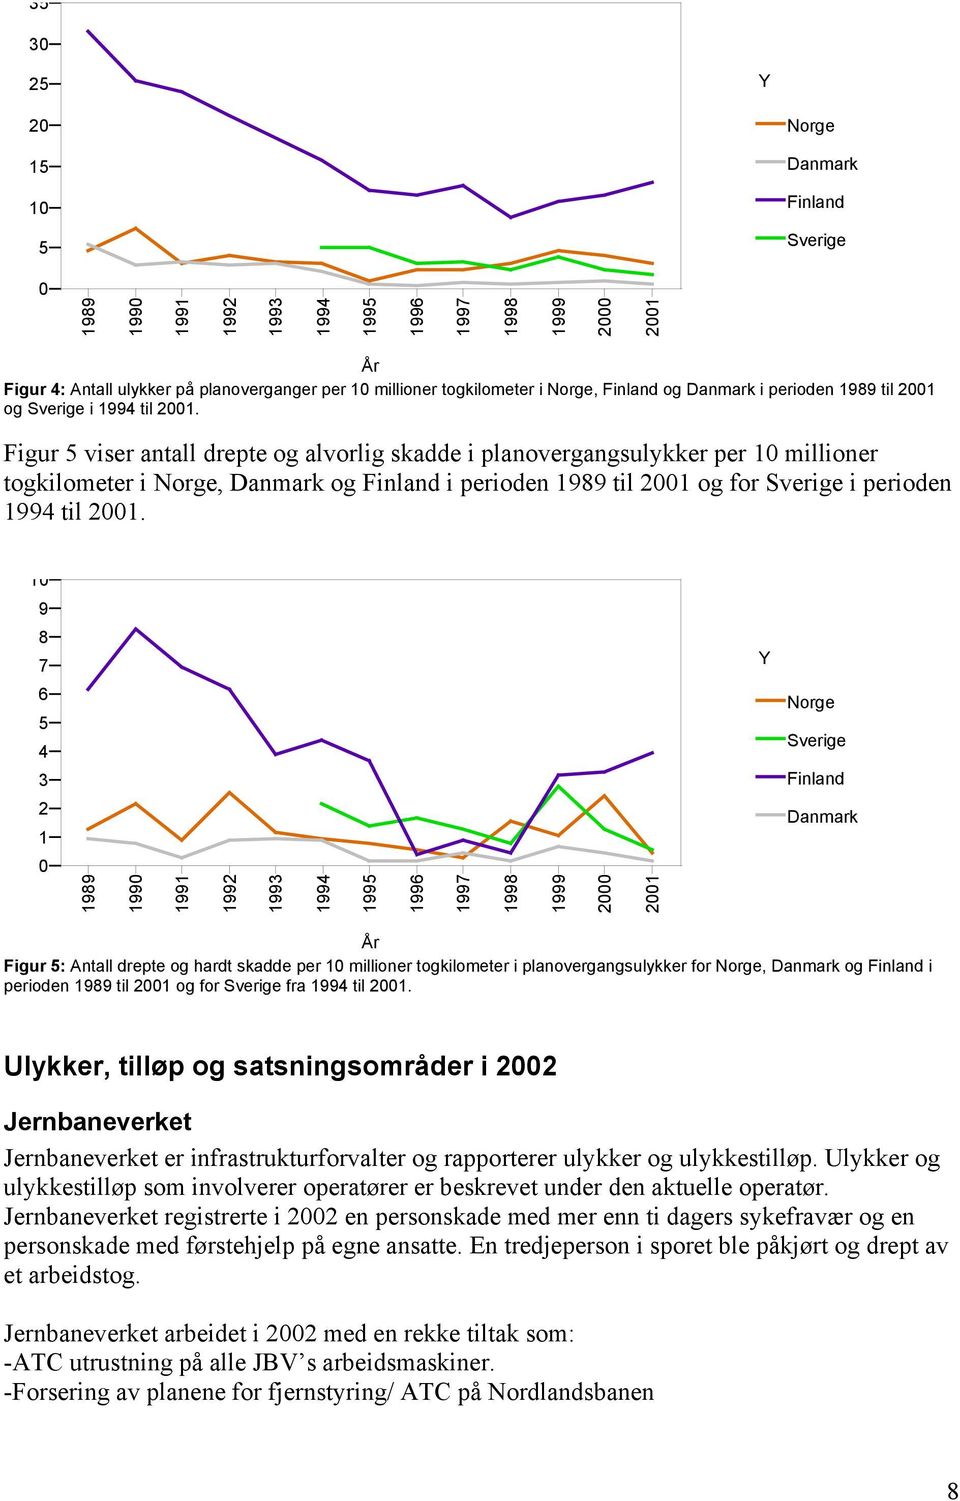 Figur 5 viser antall drepte og alvorlig skadde i planovergangsulykker per 10 millioner togkilometer i Norge, Danmark og Finland i perioden 1989 til 2001 og for Sverige i perioden 1994 til 2001.